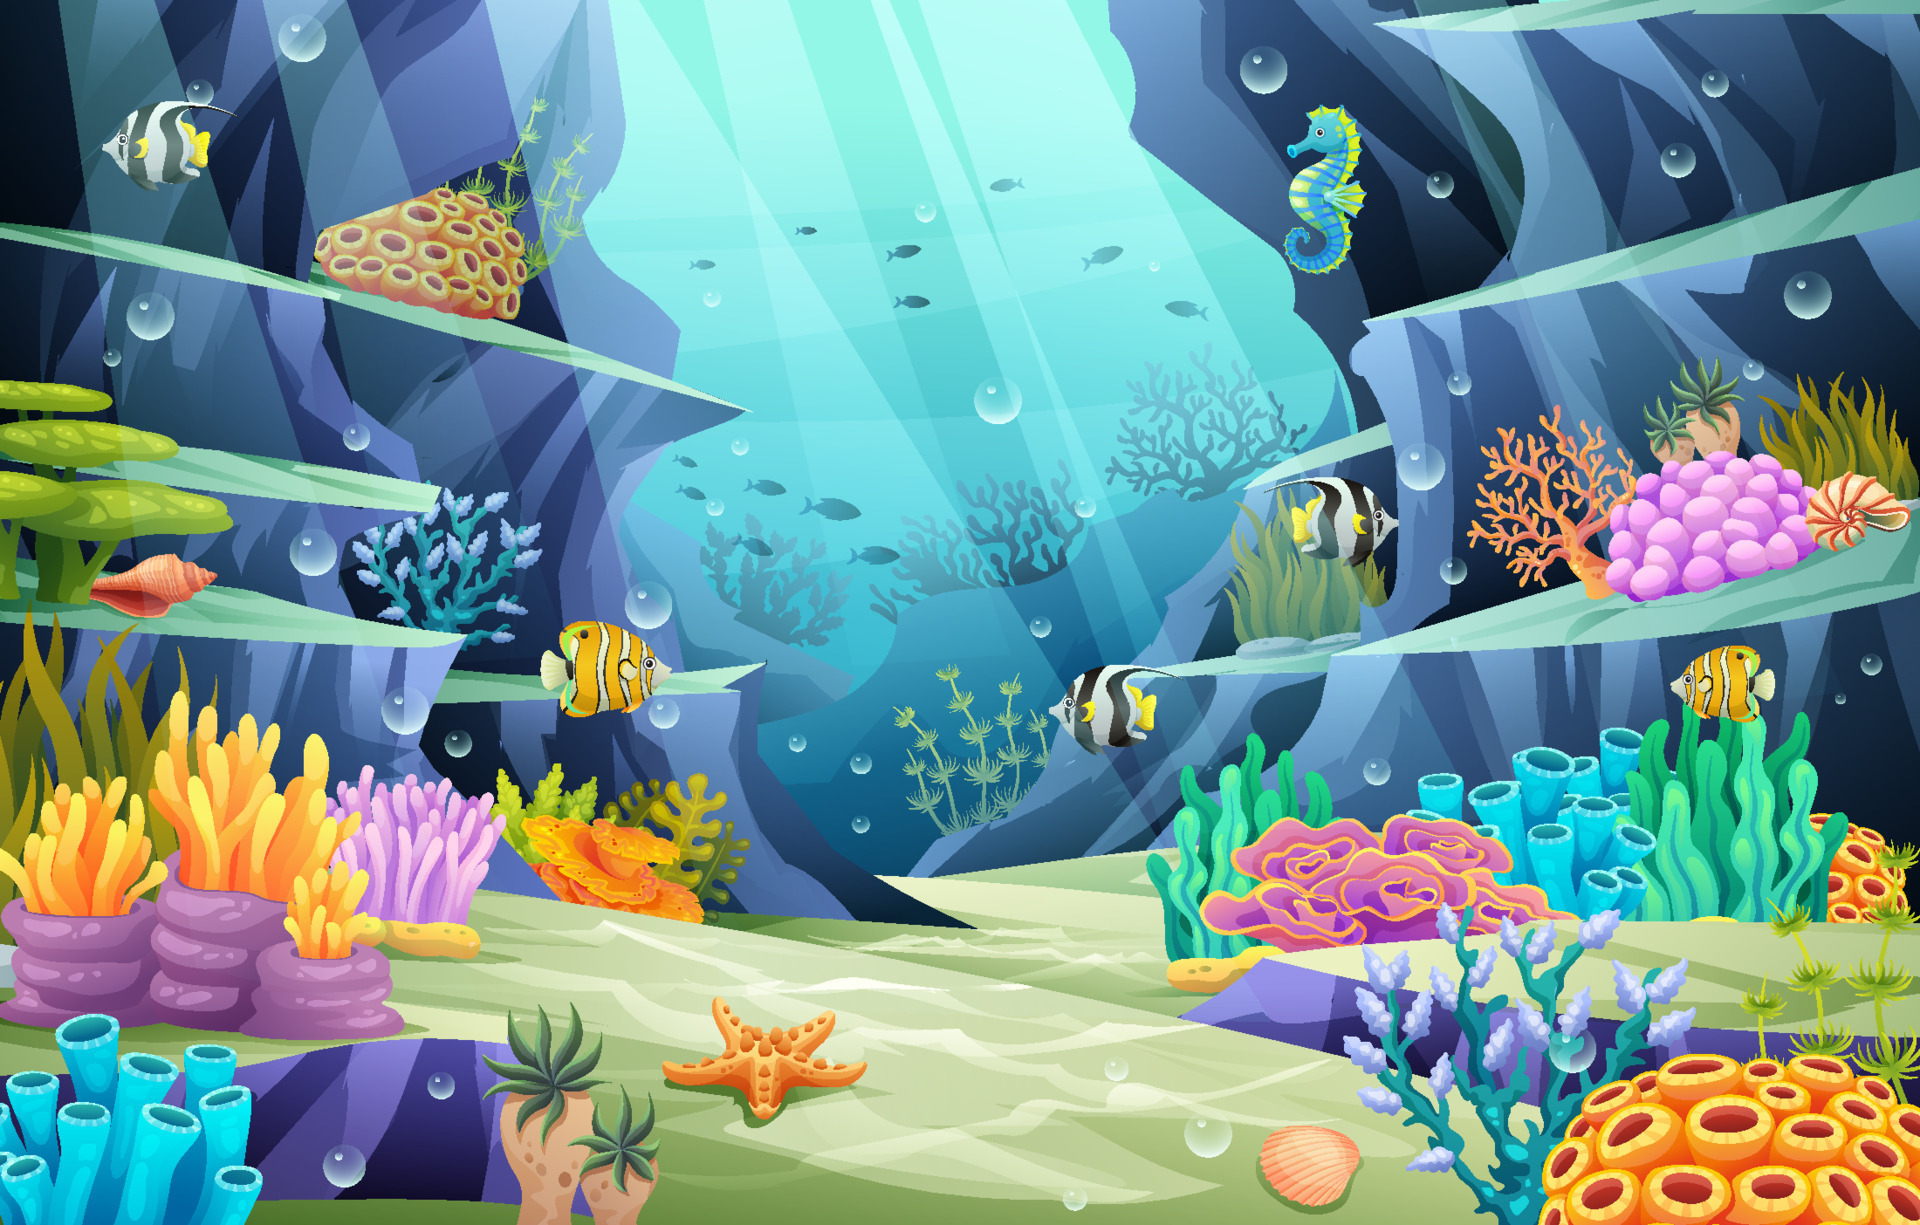 Thế giới biển dưới đại dương: Dưới các làn nước trải dài tràn đầy cuộc sống, thế giới đại dương vẫn đang chờ đợi bạn khám phá. Quản thể đa dạng của sinh vật biển, từ cá lớn đến rêu biển, đang đợi bạn tới và xem. Đẳng cấp của không gian đại dương đang chờ bạn.